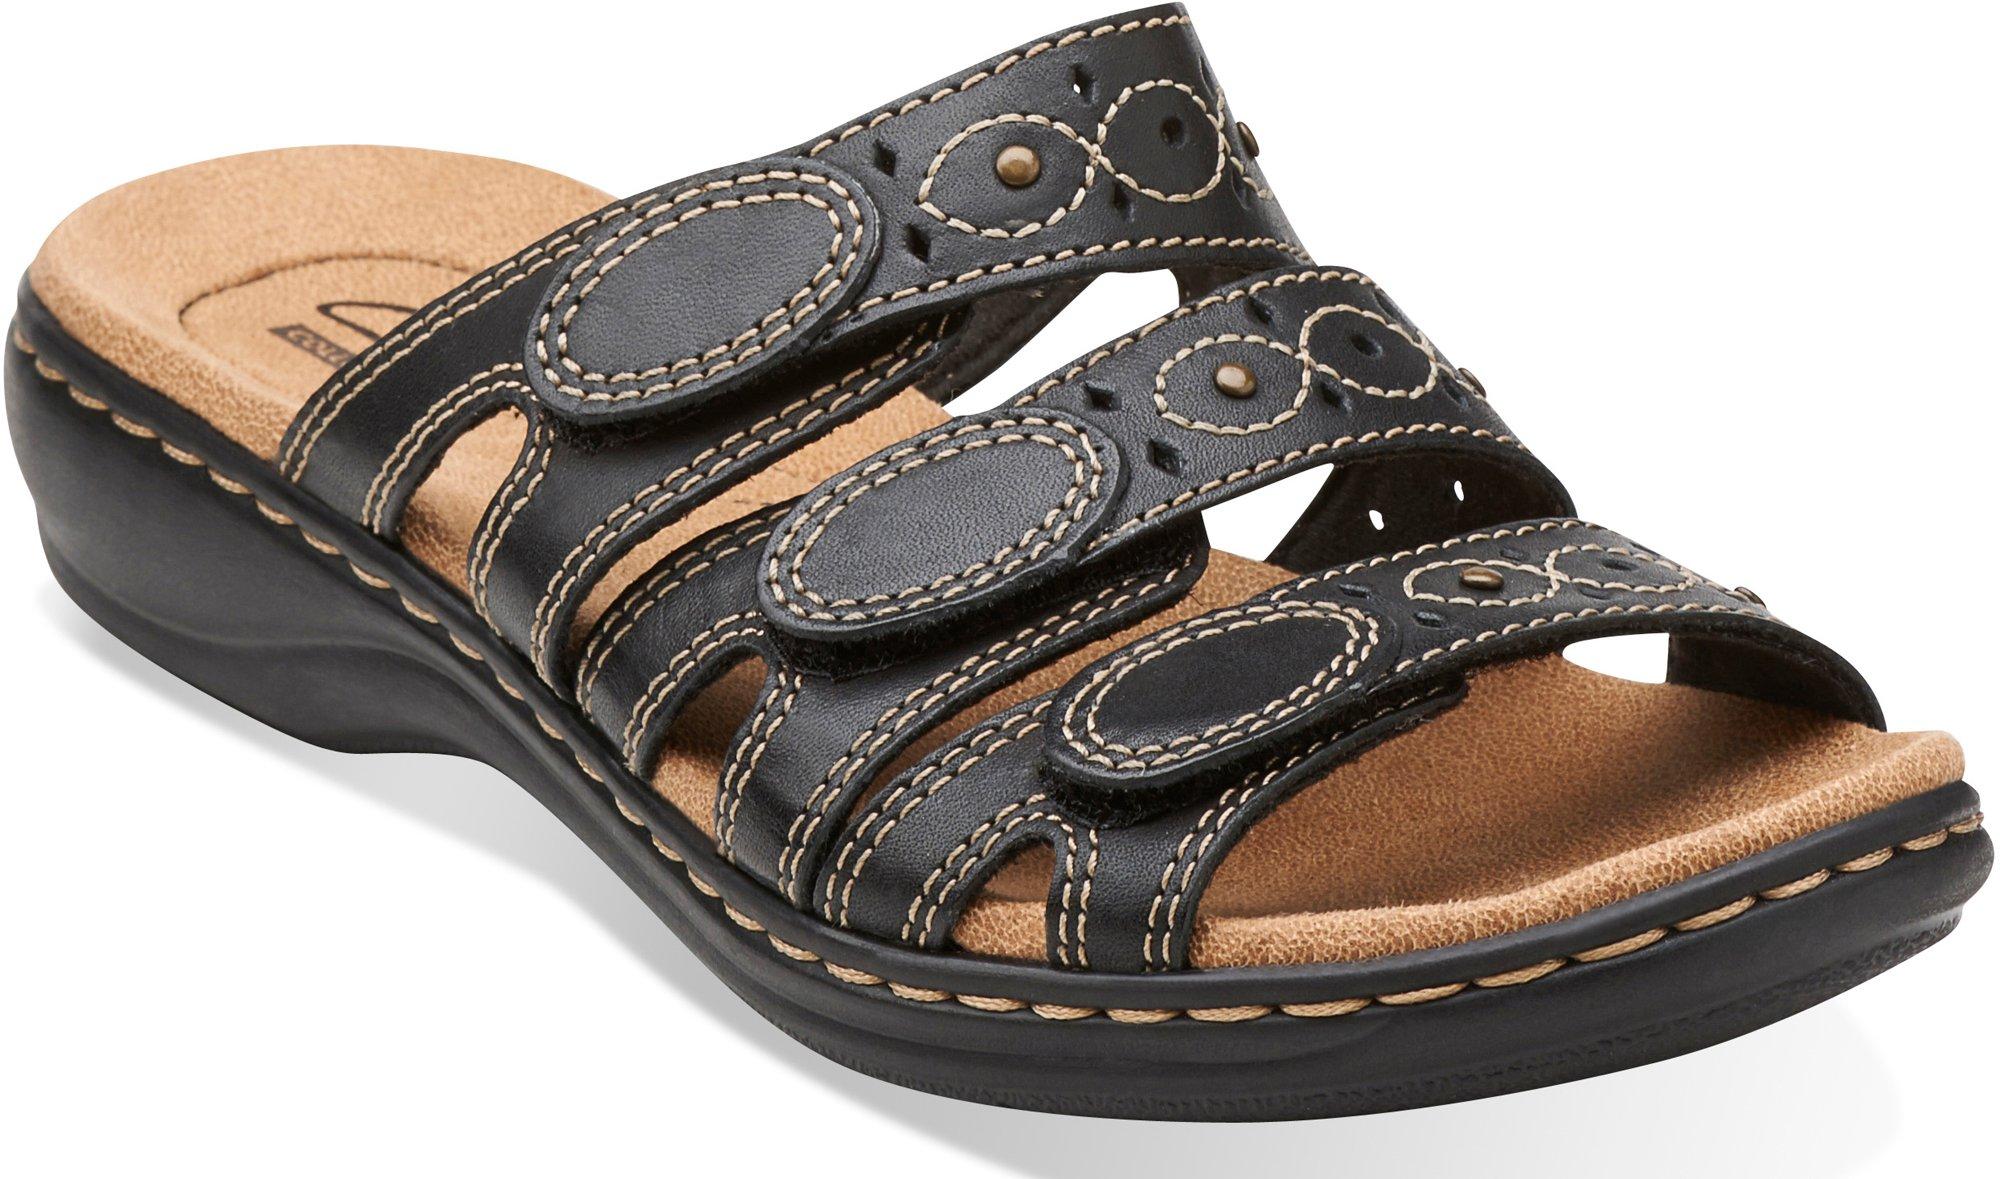 clarks women's leisa cacti slide sandal